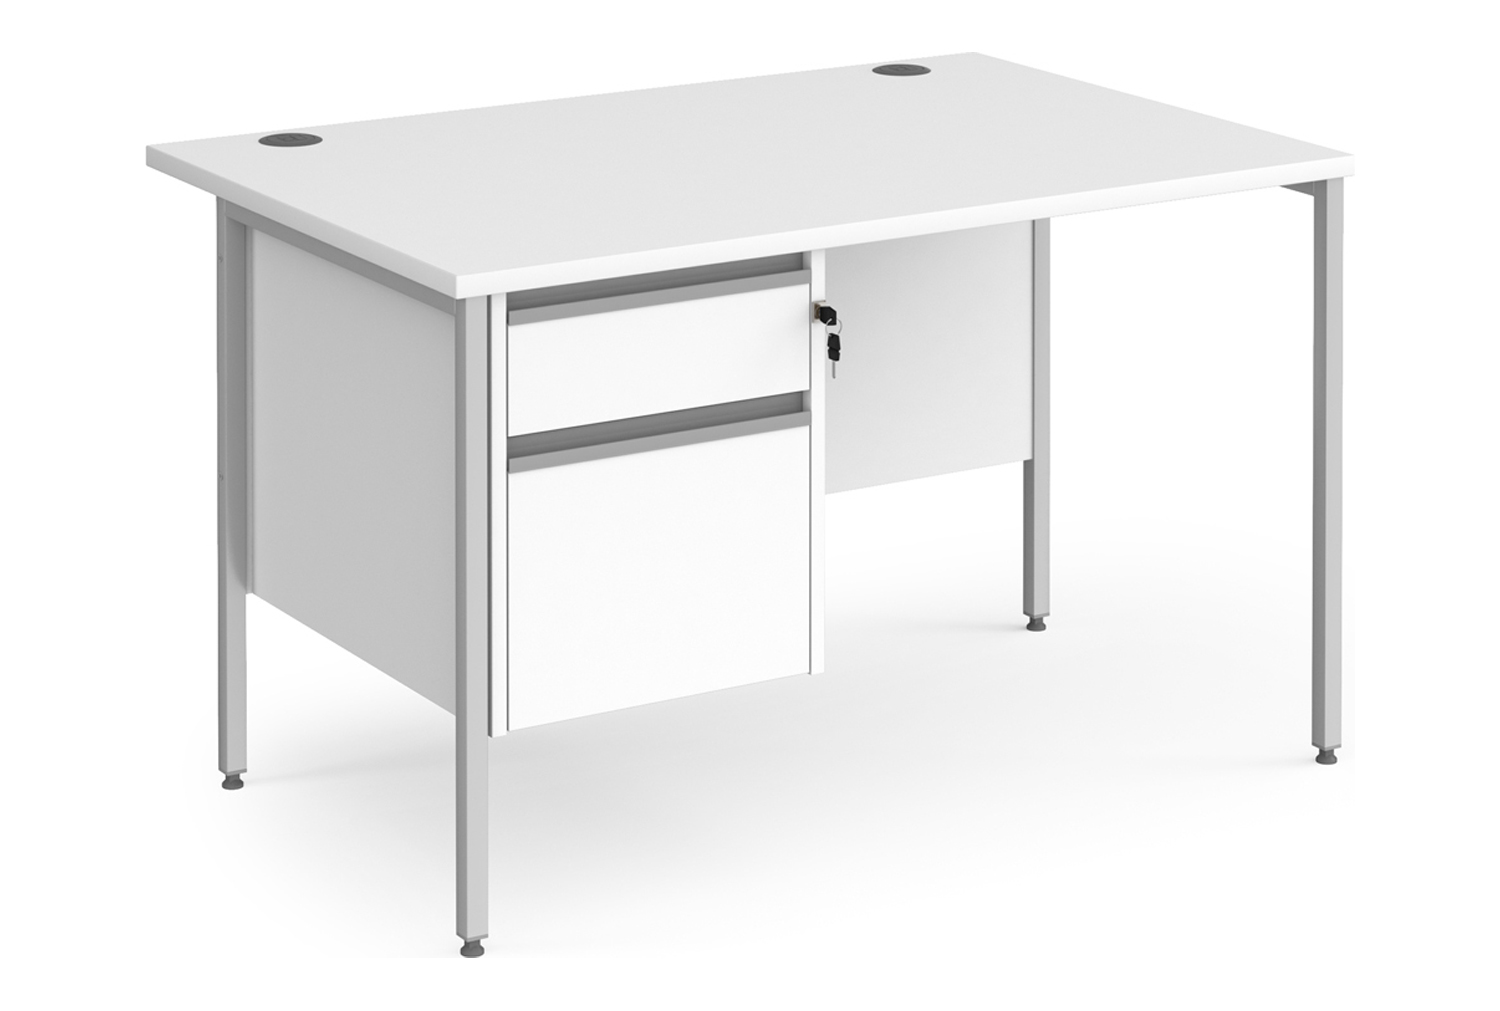 Value Line Classic+ Rectangular H-Leg Office Desk 2 Drawers (Silver Leg), 120wx80dx73h (cm), White, Fully Installed